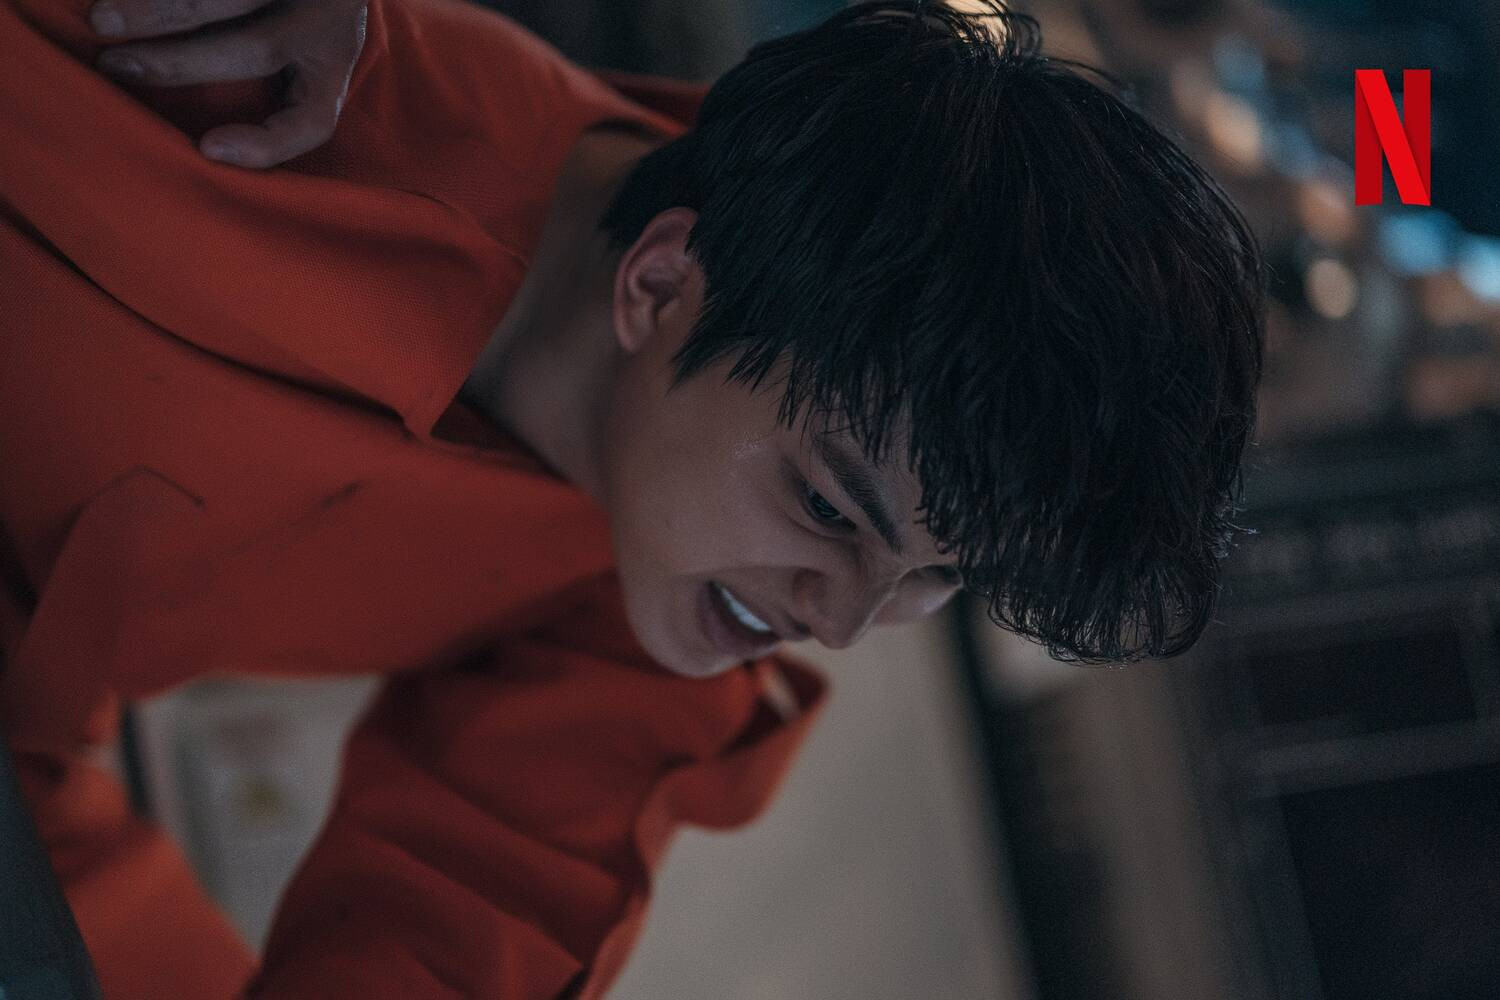 Phim chữa lành 'Chào mừng đến Samdalri' vượt mặt Song Kang và My Demon, đạt top 1 Netflix Việt Nam - ảnh 2